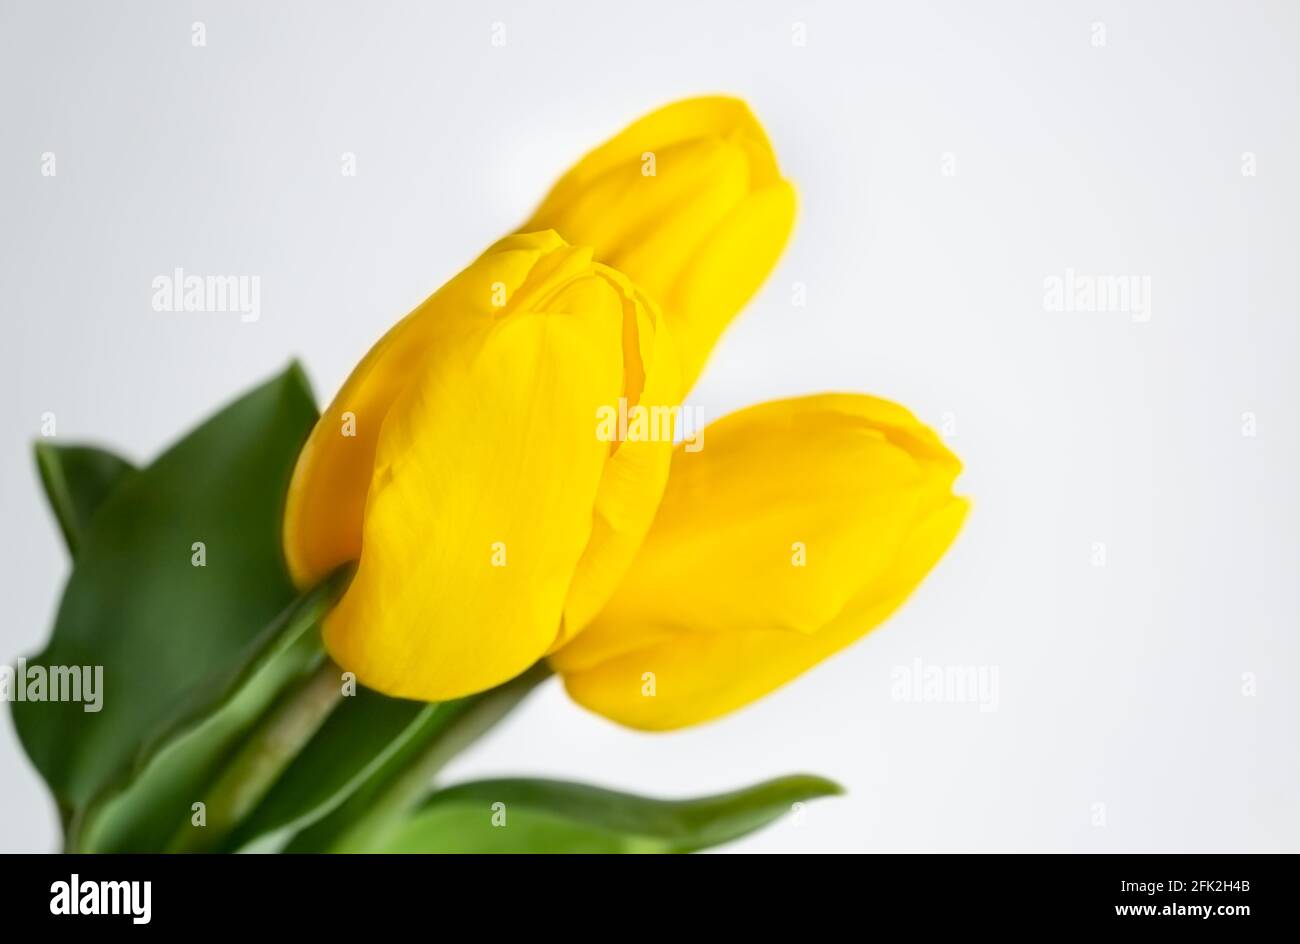 Tulipani gialli su sfondo chiaro. Immagine a molla con spazio di testo Foto Stock